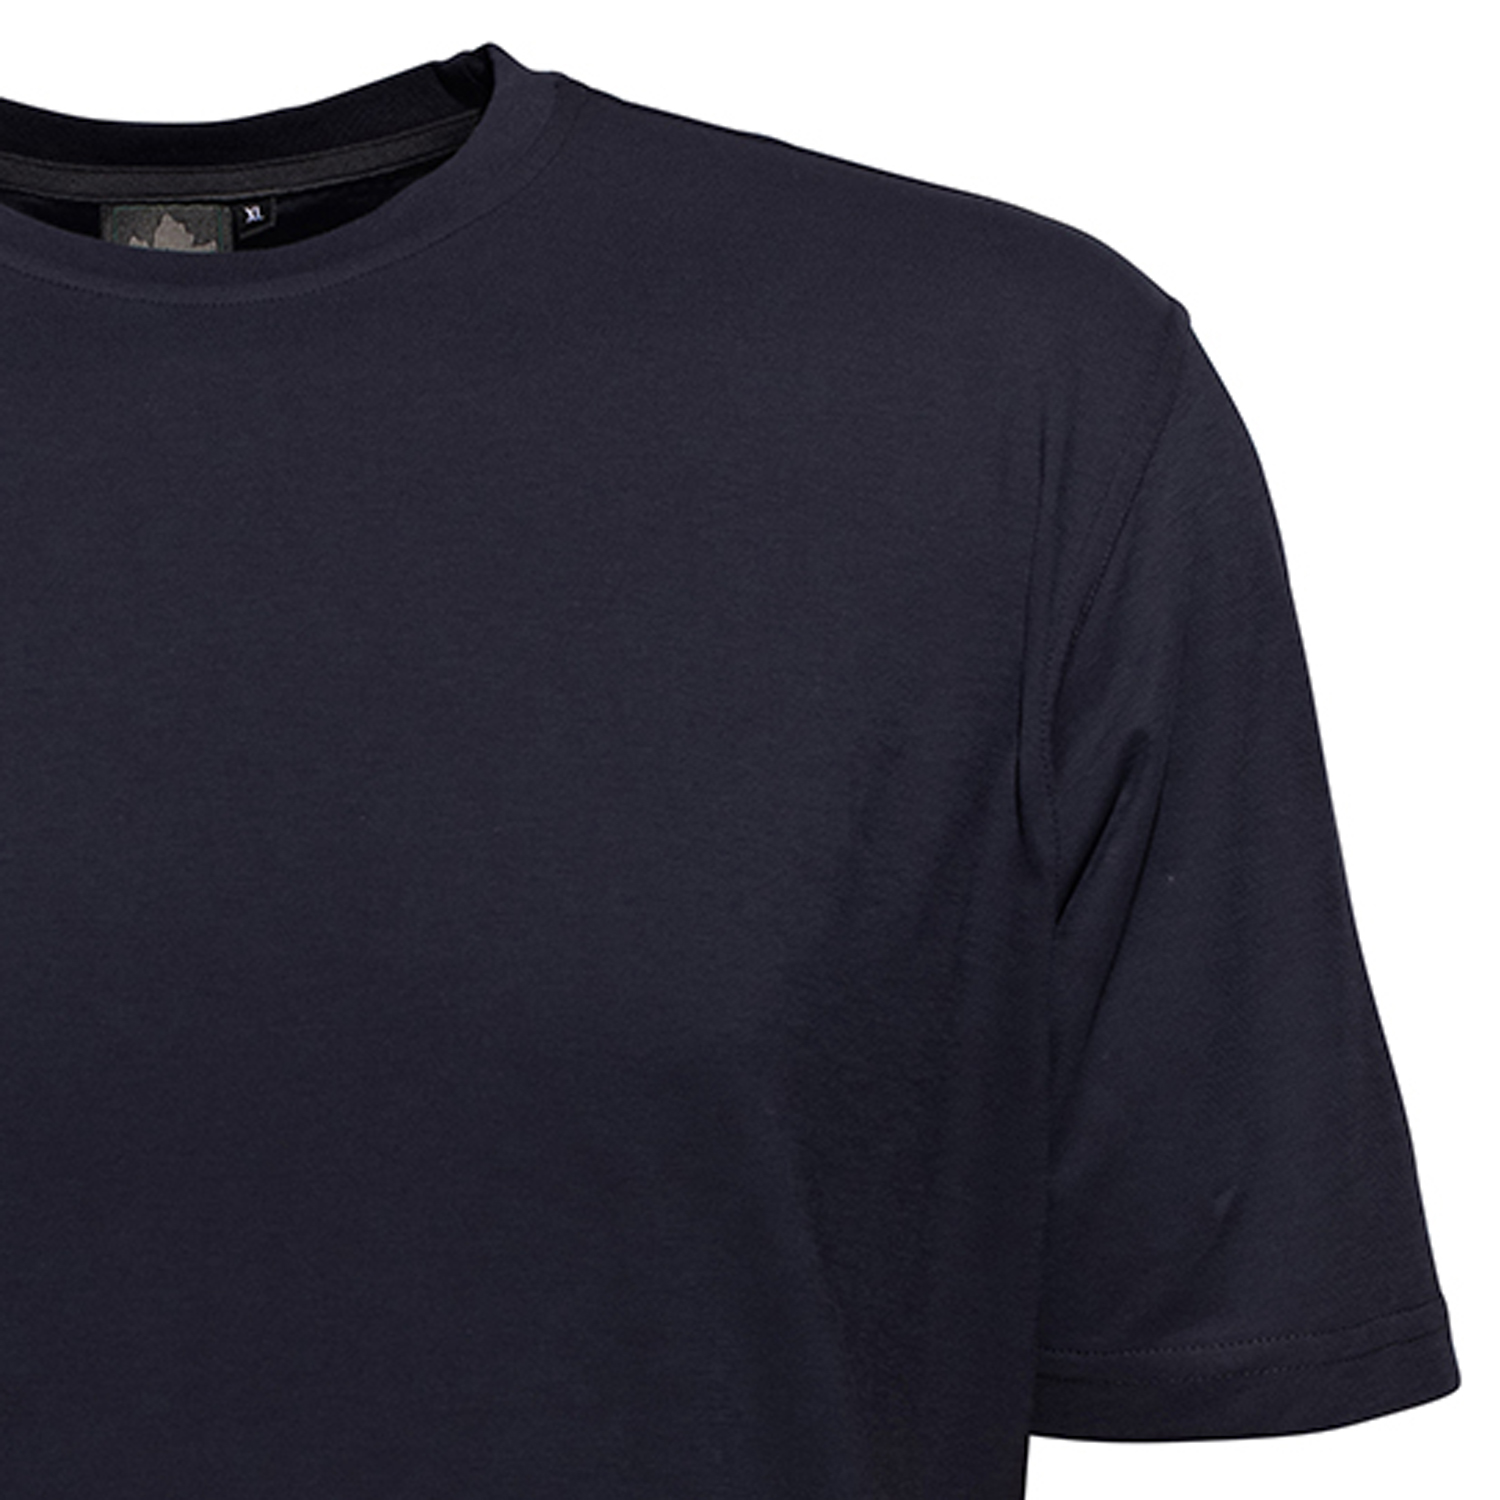 Herren Rundhalsshirt kurzarm von Ahorn Sportswear in dunkelblau bis Übergröße 10XL